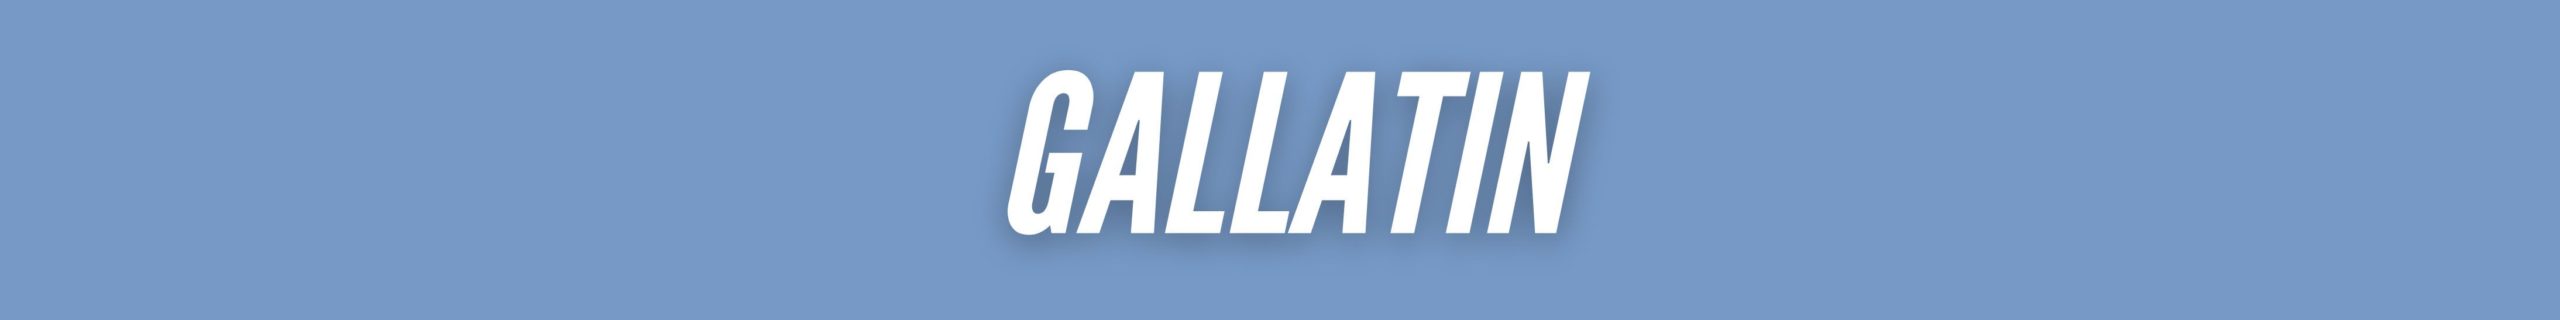 gallatin